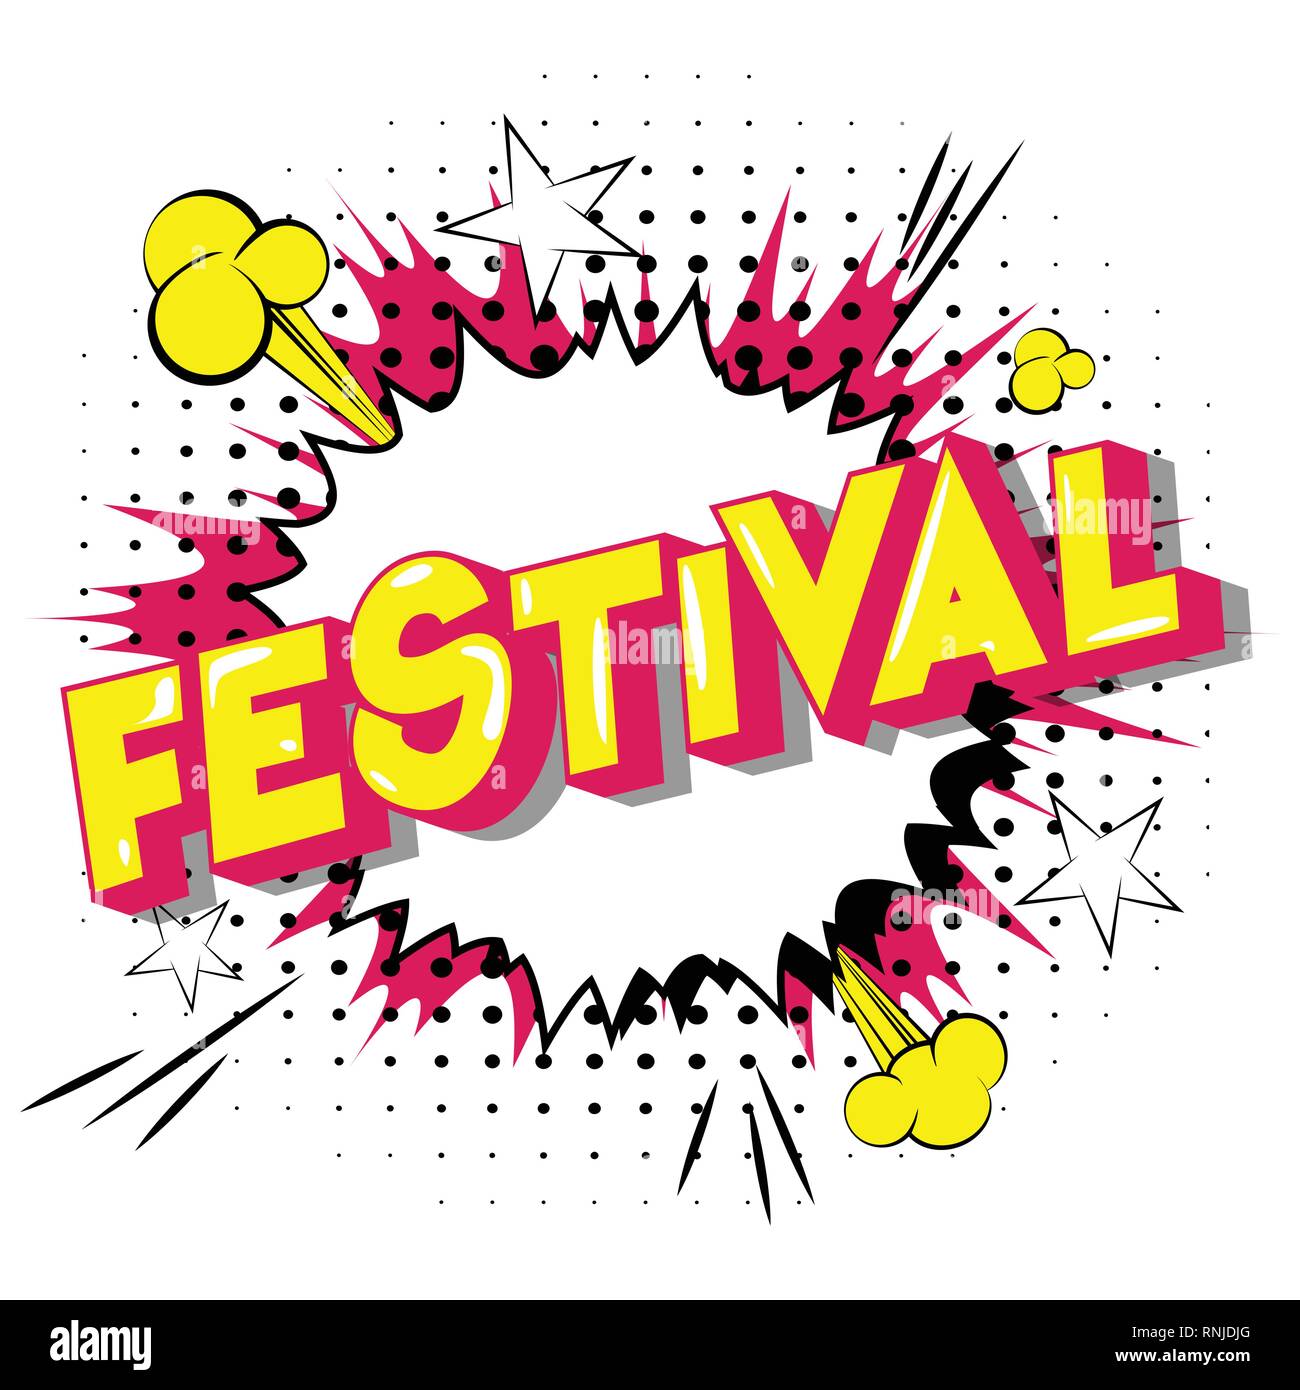 Festival-Vector illustrierte Comic Stil Phrase auf abstrakten Hintergrund. Stock Vektor